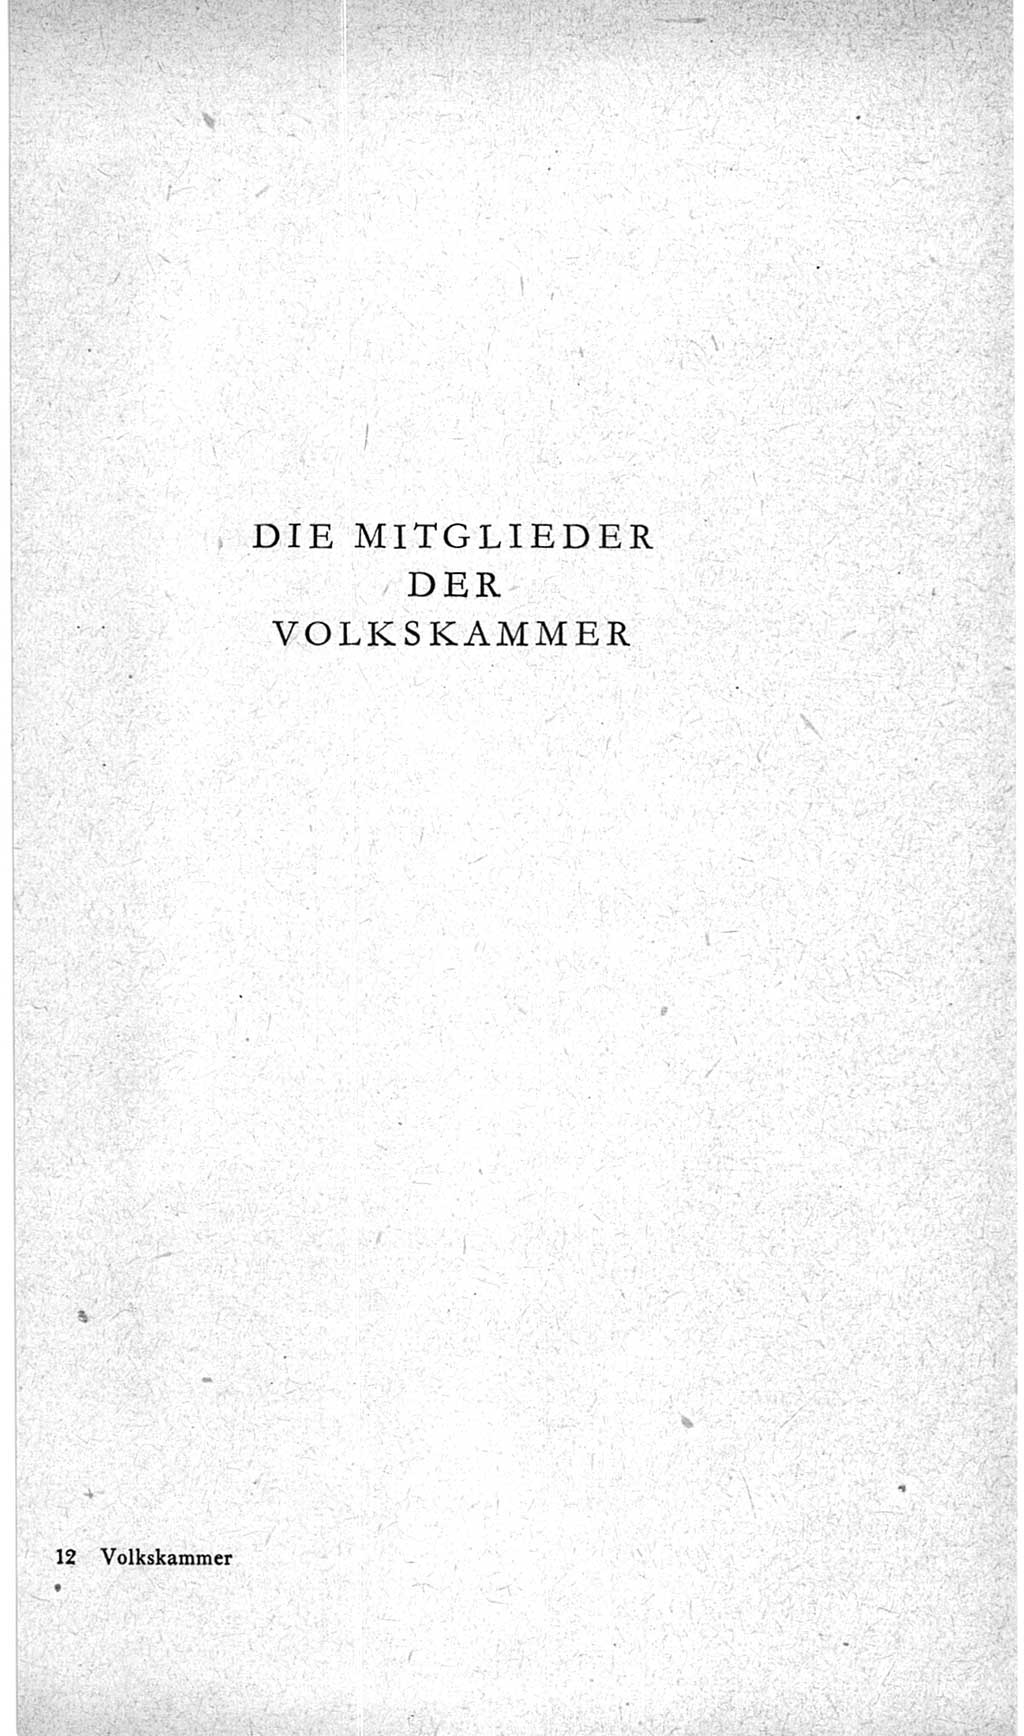 Handbuch der Volkskammer (VK) der Deutschen Demokratischen Republik (DDR), 2. Wahlperiode 1954-1958, Seite 173 (Hdb. VK. DDR, 2. WP. 1954-1958, S. 173)